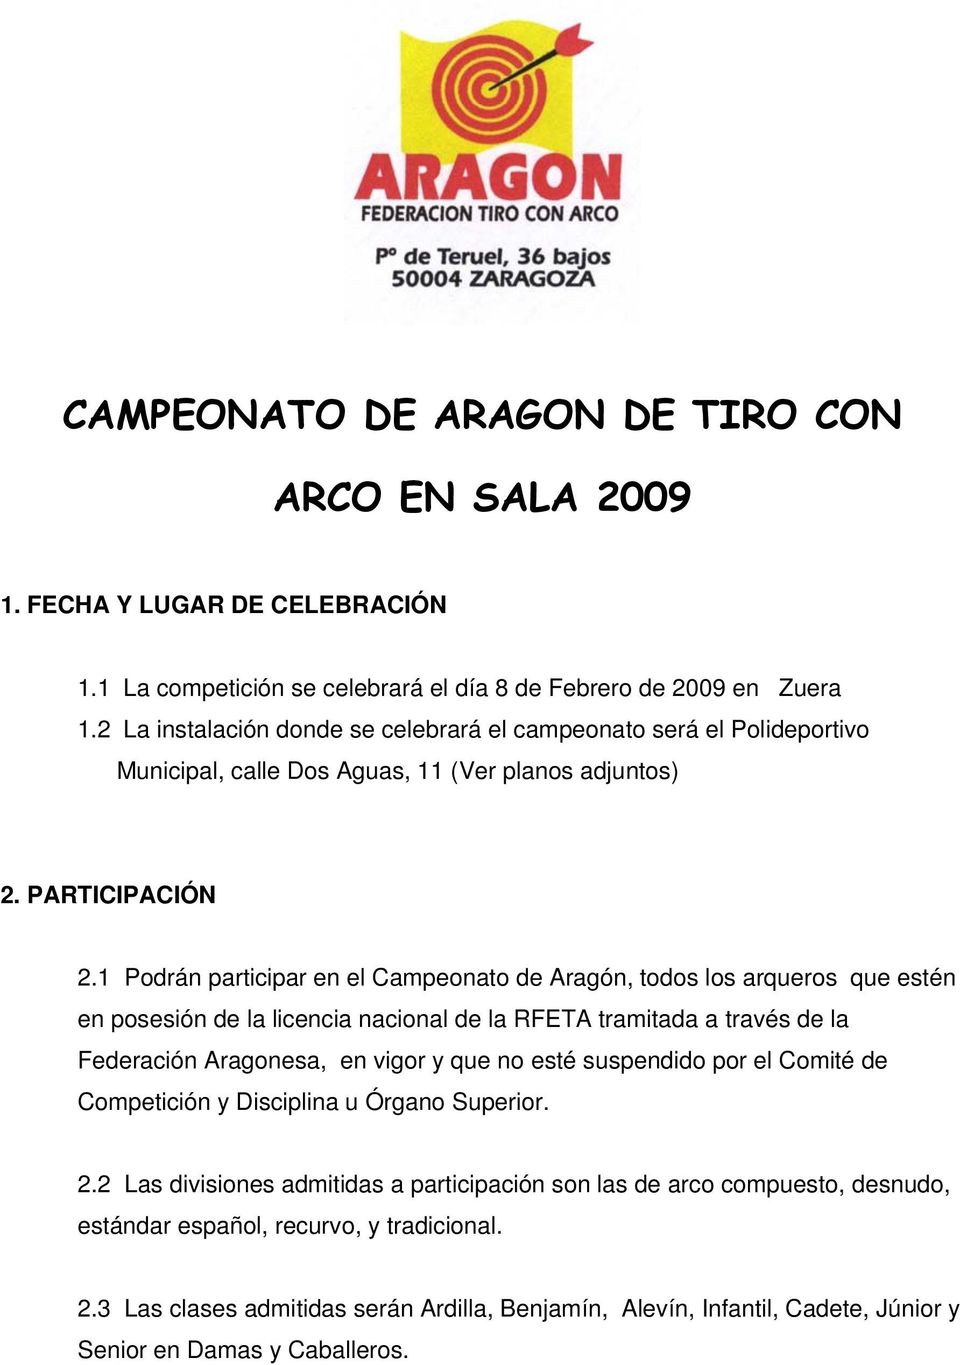 1 Podrán participar en el Campeonato de Aragón, todos los arqueros que estén en posesión de la licencia nacional de la RFETA tramitada a través de la Federación Aragonesa, en vigor y que no esté